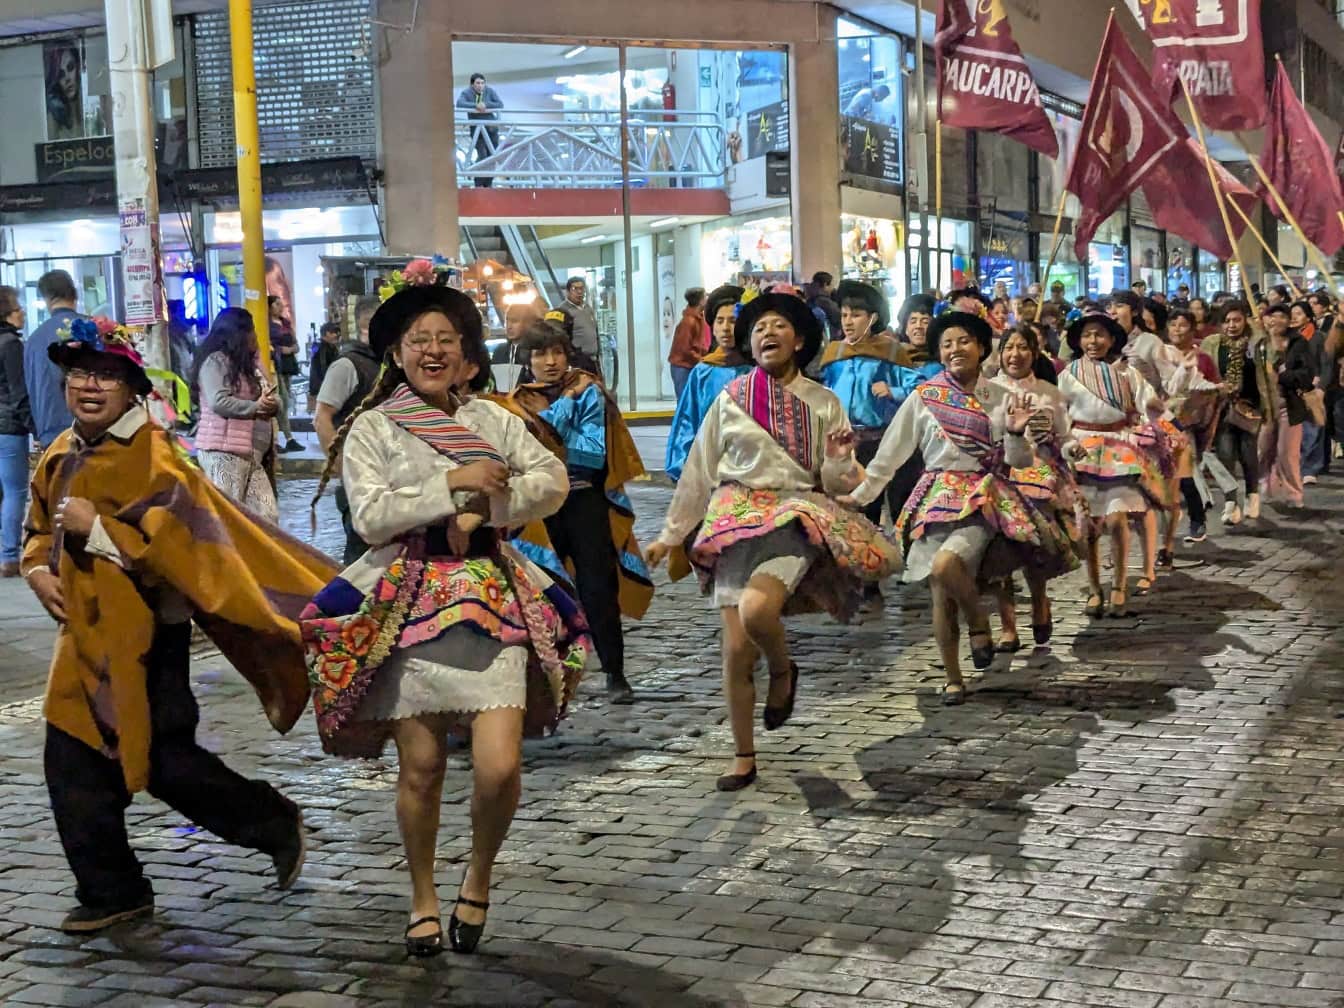 Ihmiset perinteisissä perulaisissa kansanvaatteissa tanssivat kadulla katufestivaalin aikana